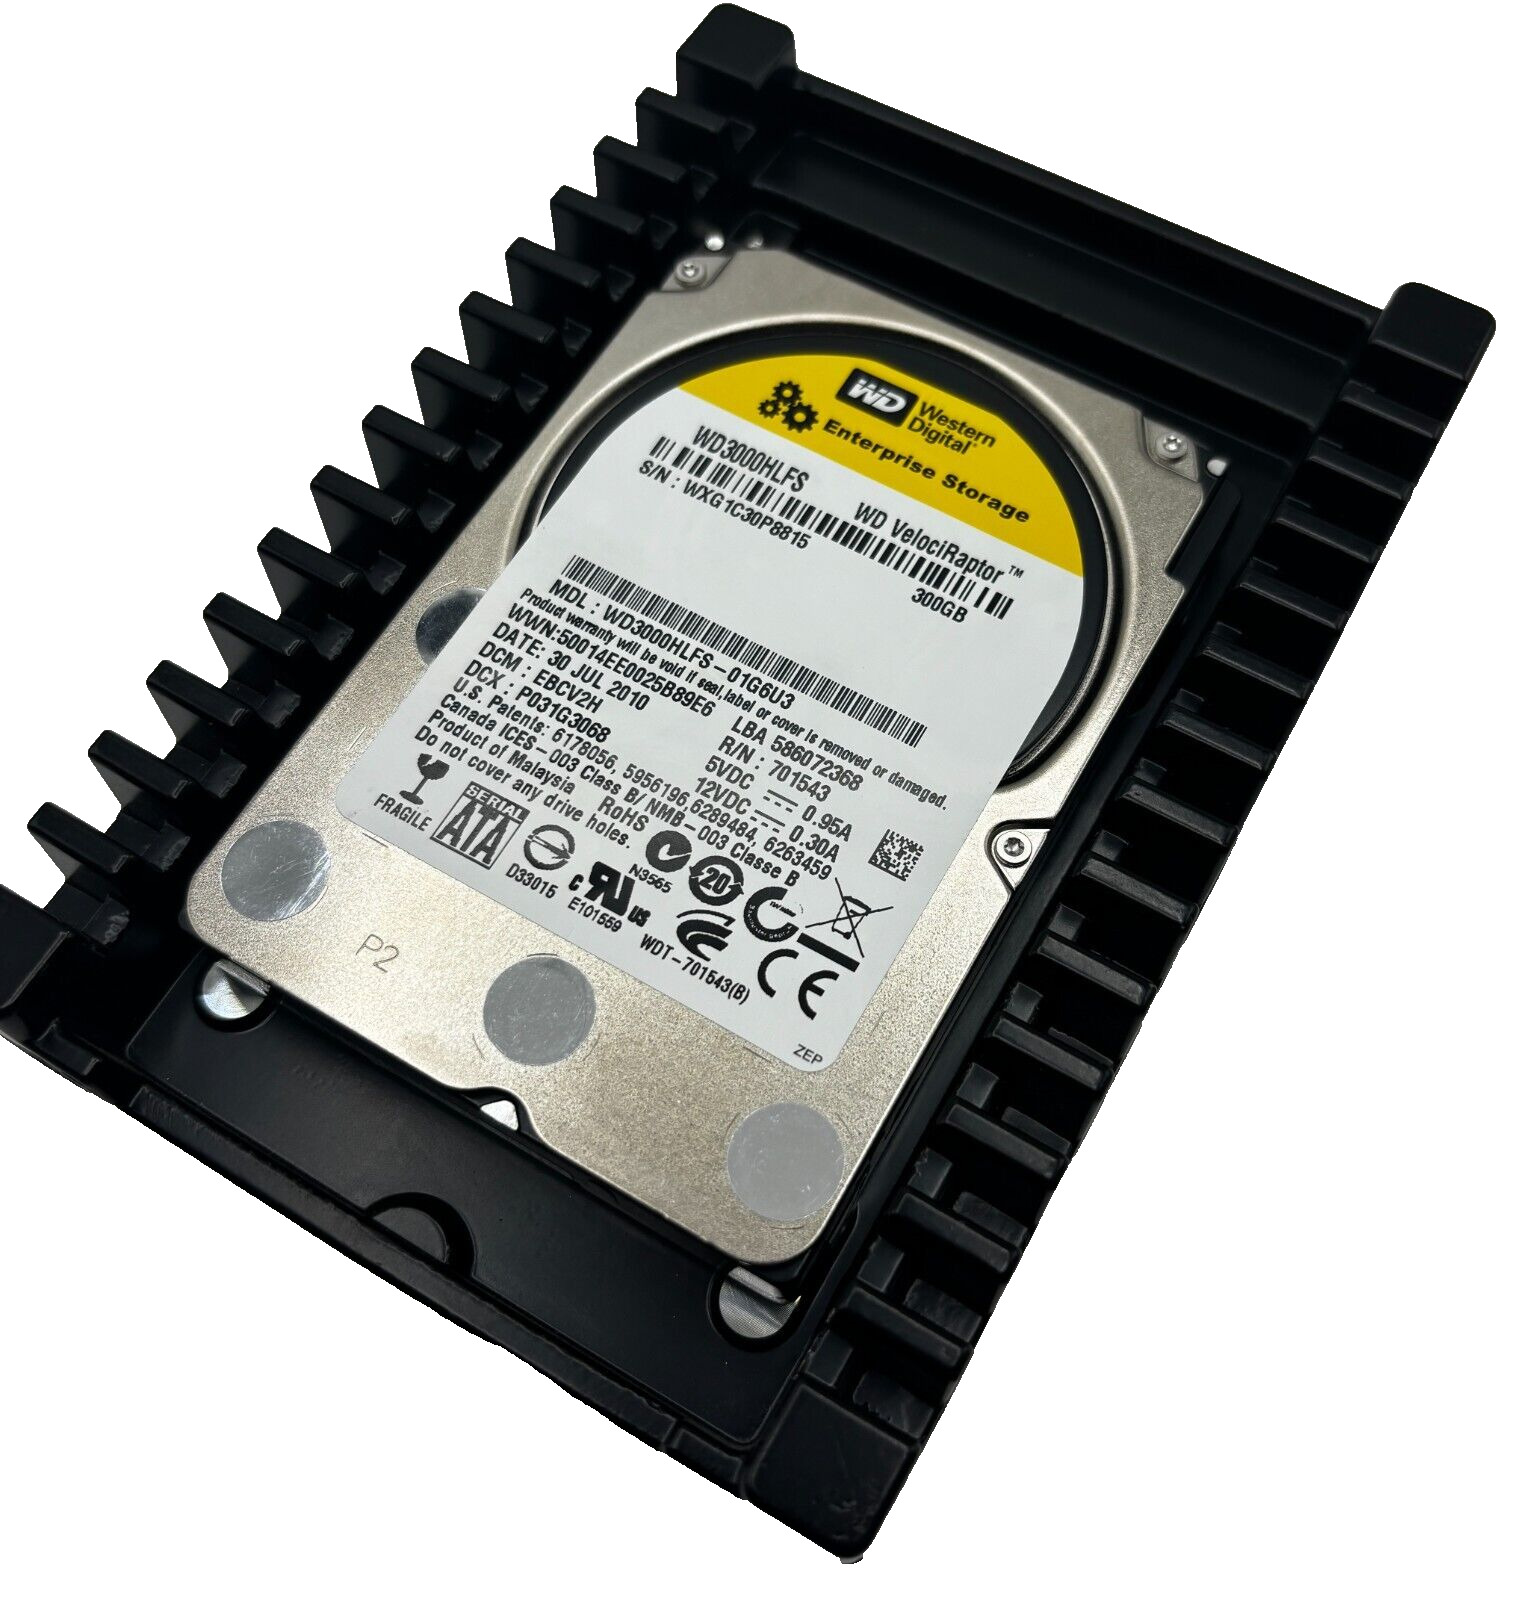 Western Digital WD3000HLFS Enterprise Storage 300GB WD VelociRaptor Hard Drive